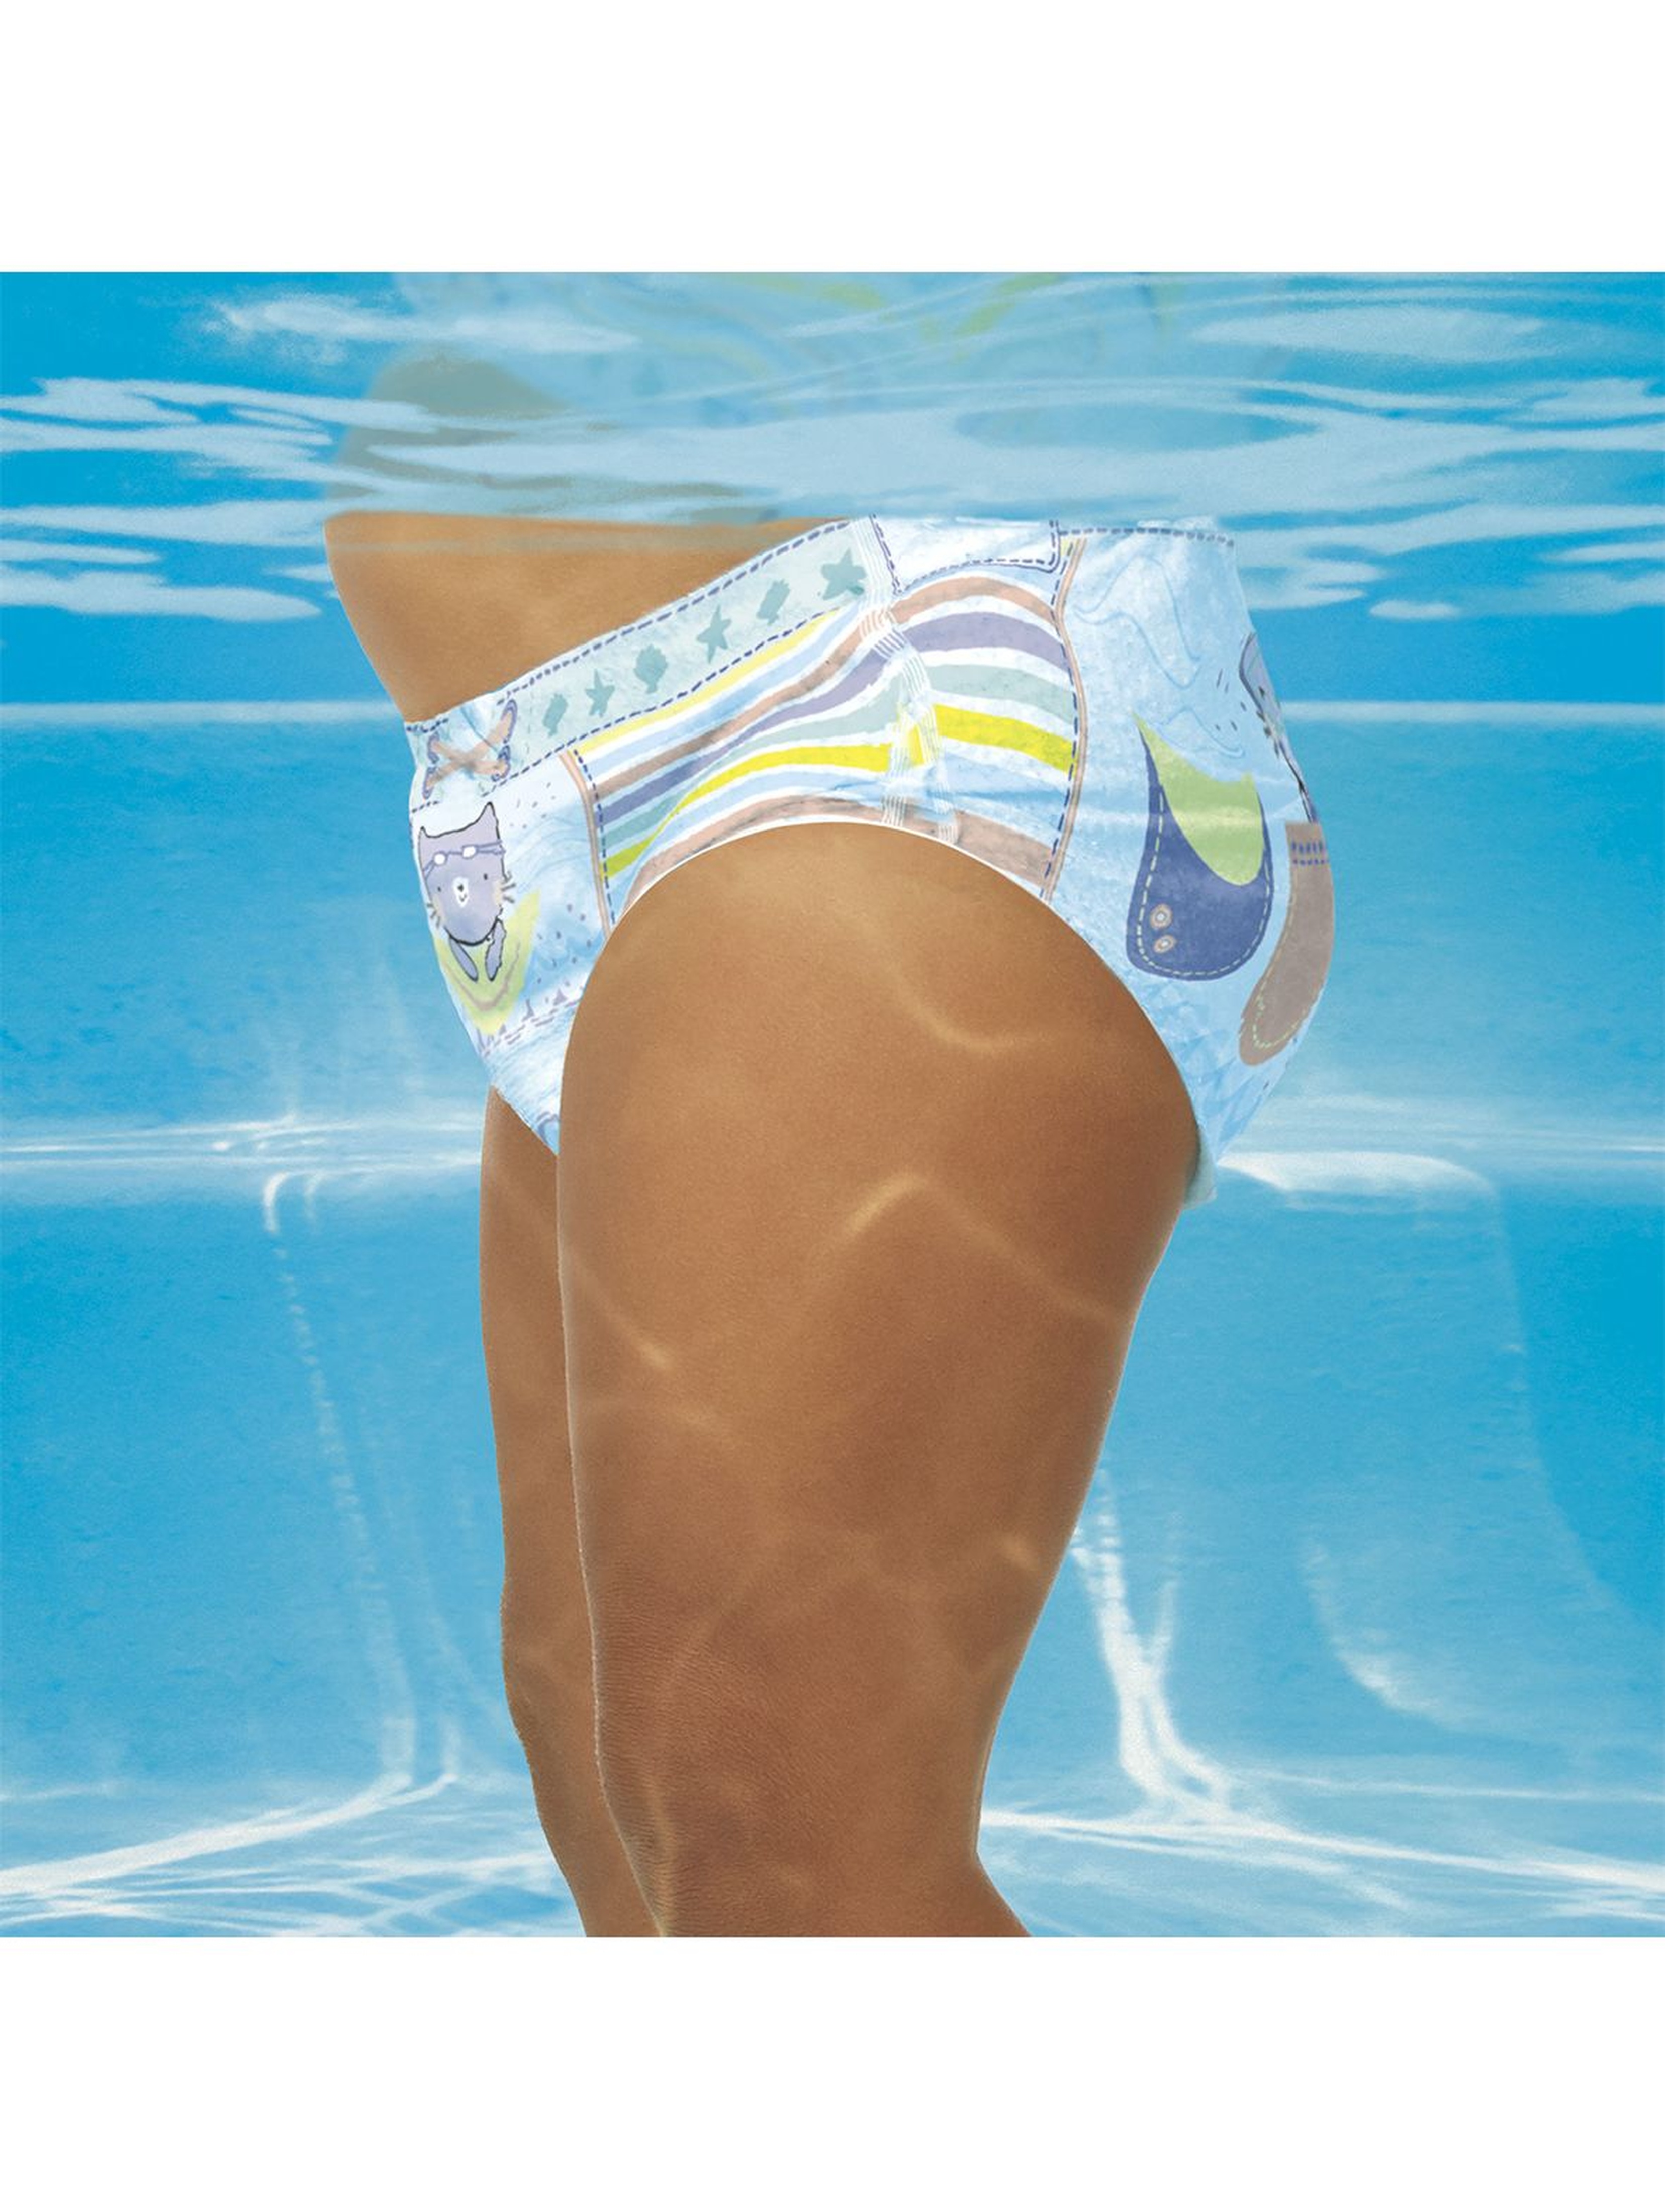 Pampers Splashers, Rozmiar 3-4, 12 jednorazowych pieluch do pływania